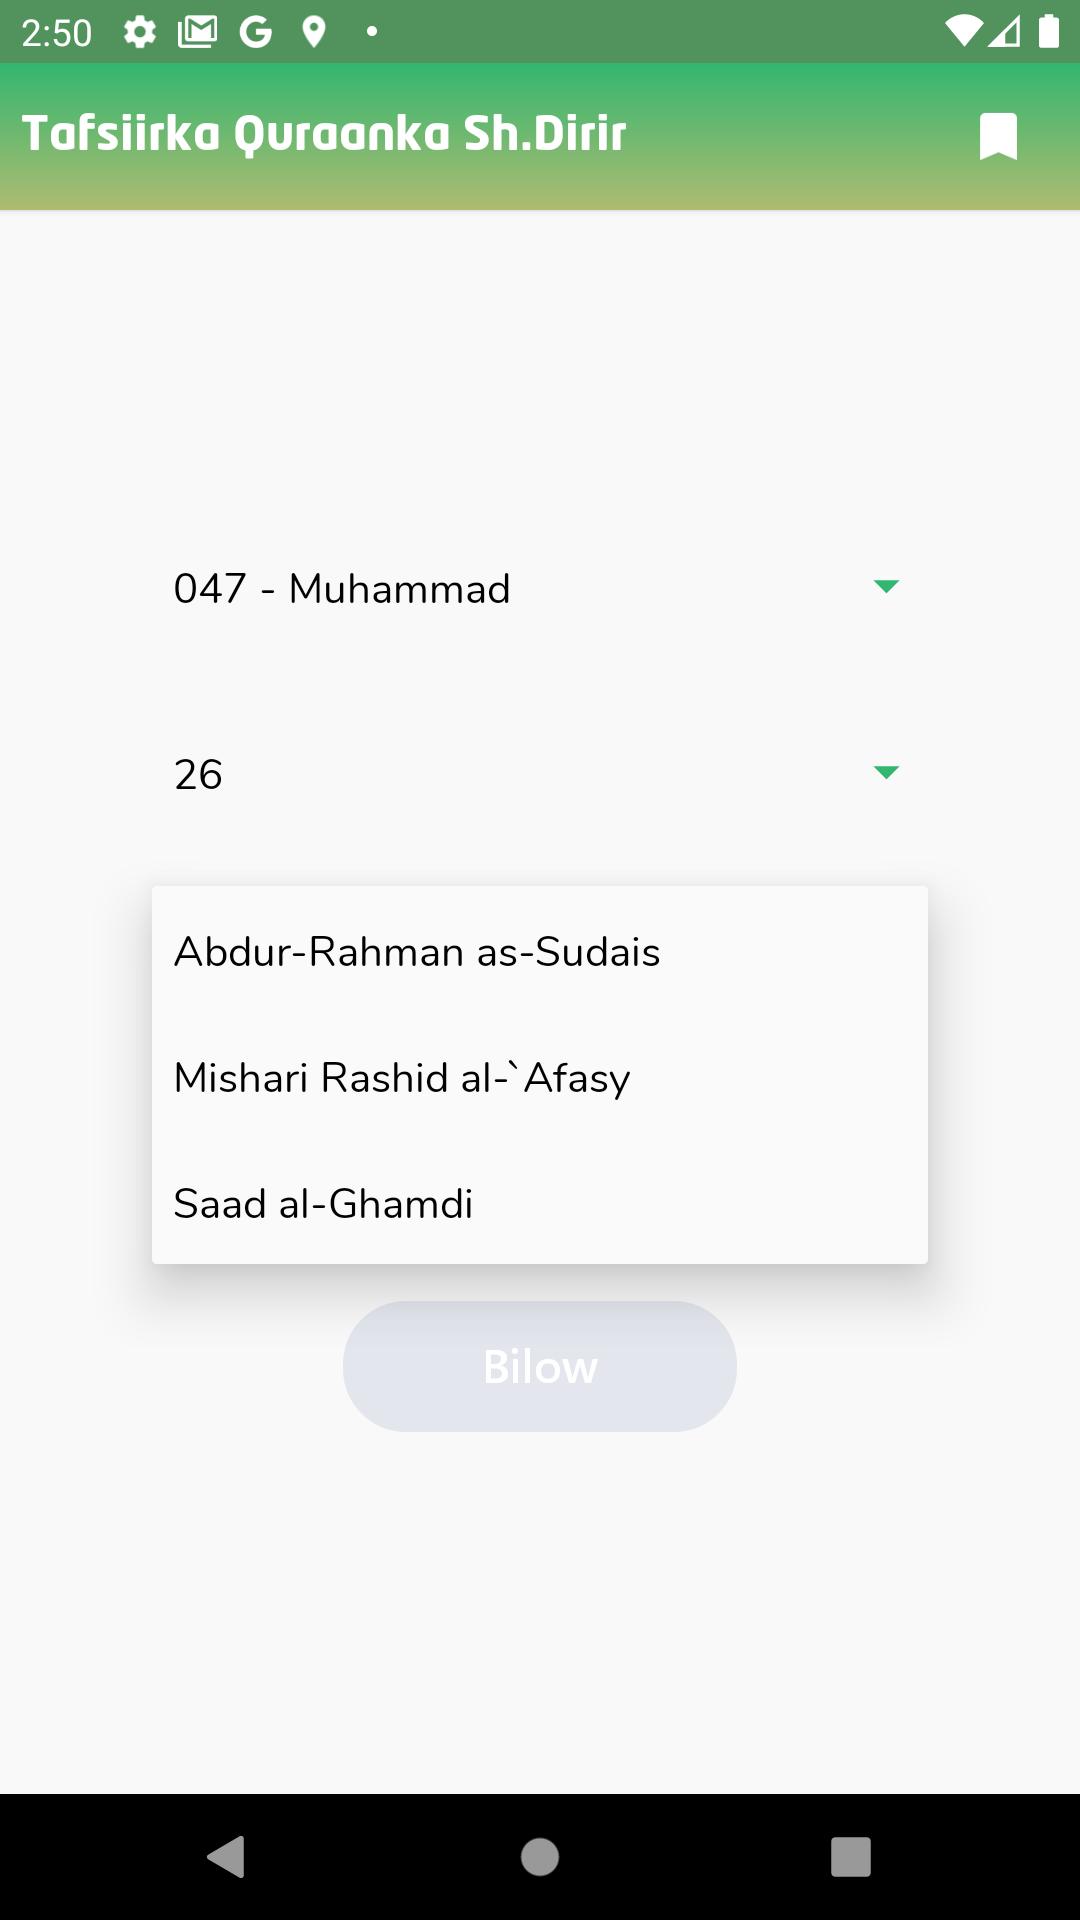 ดาวน์โหลด Tafsiirka Quranka Sh. Dirir APK สำหรับ Android